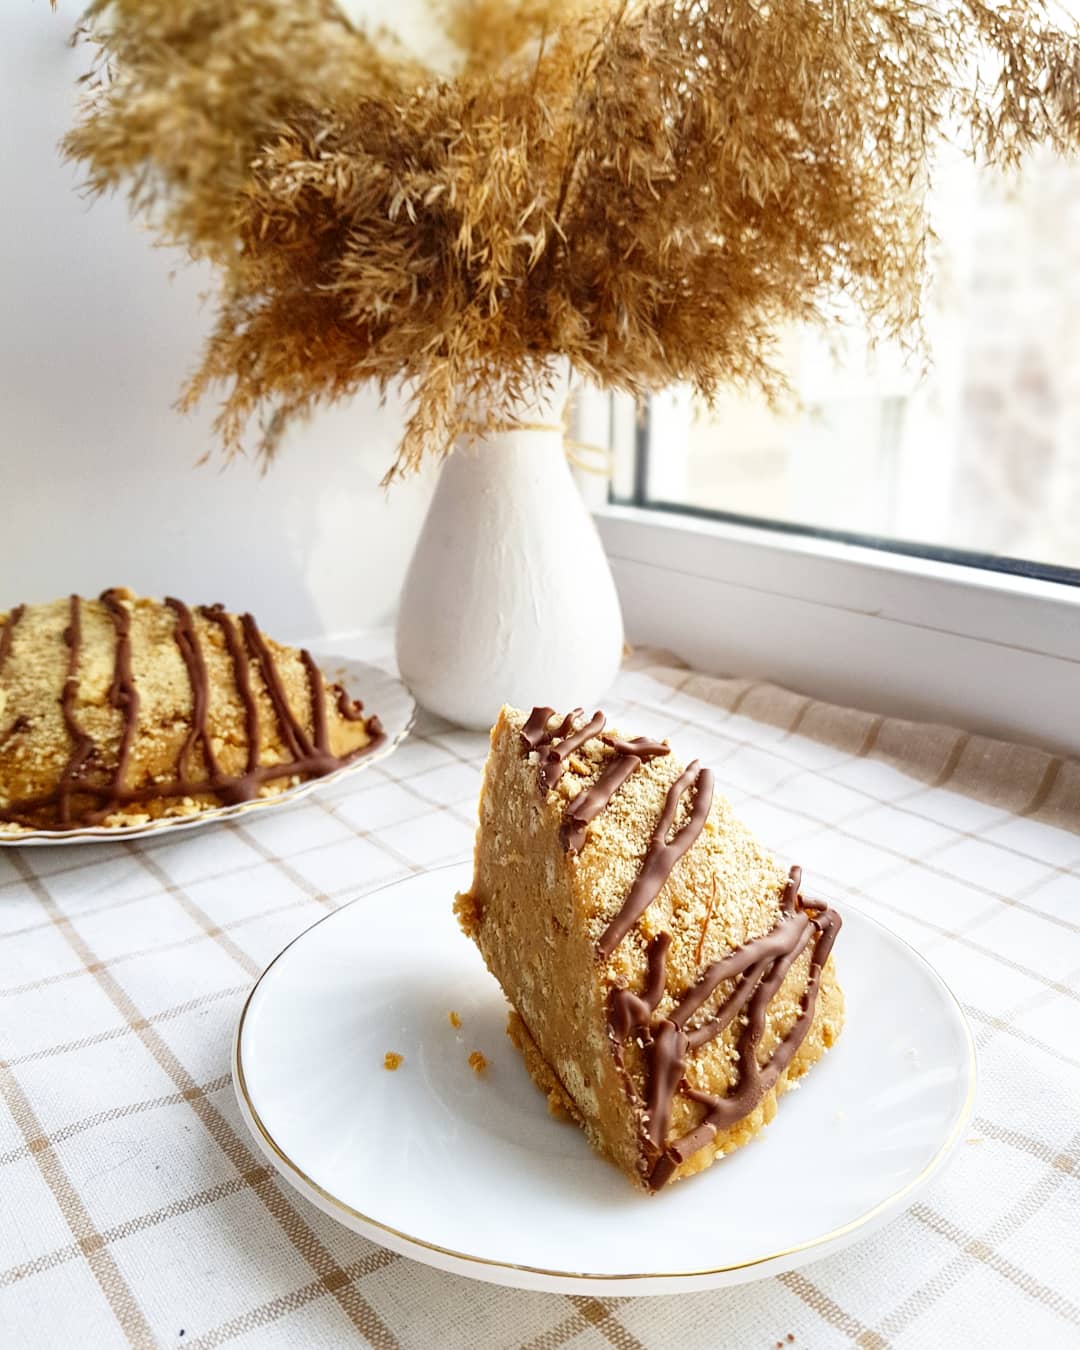 Рецепт: Торт муравейник - С грецкими орехами, которые подчеркнут вкус